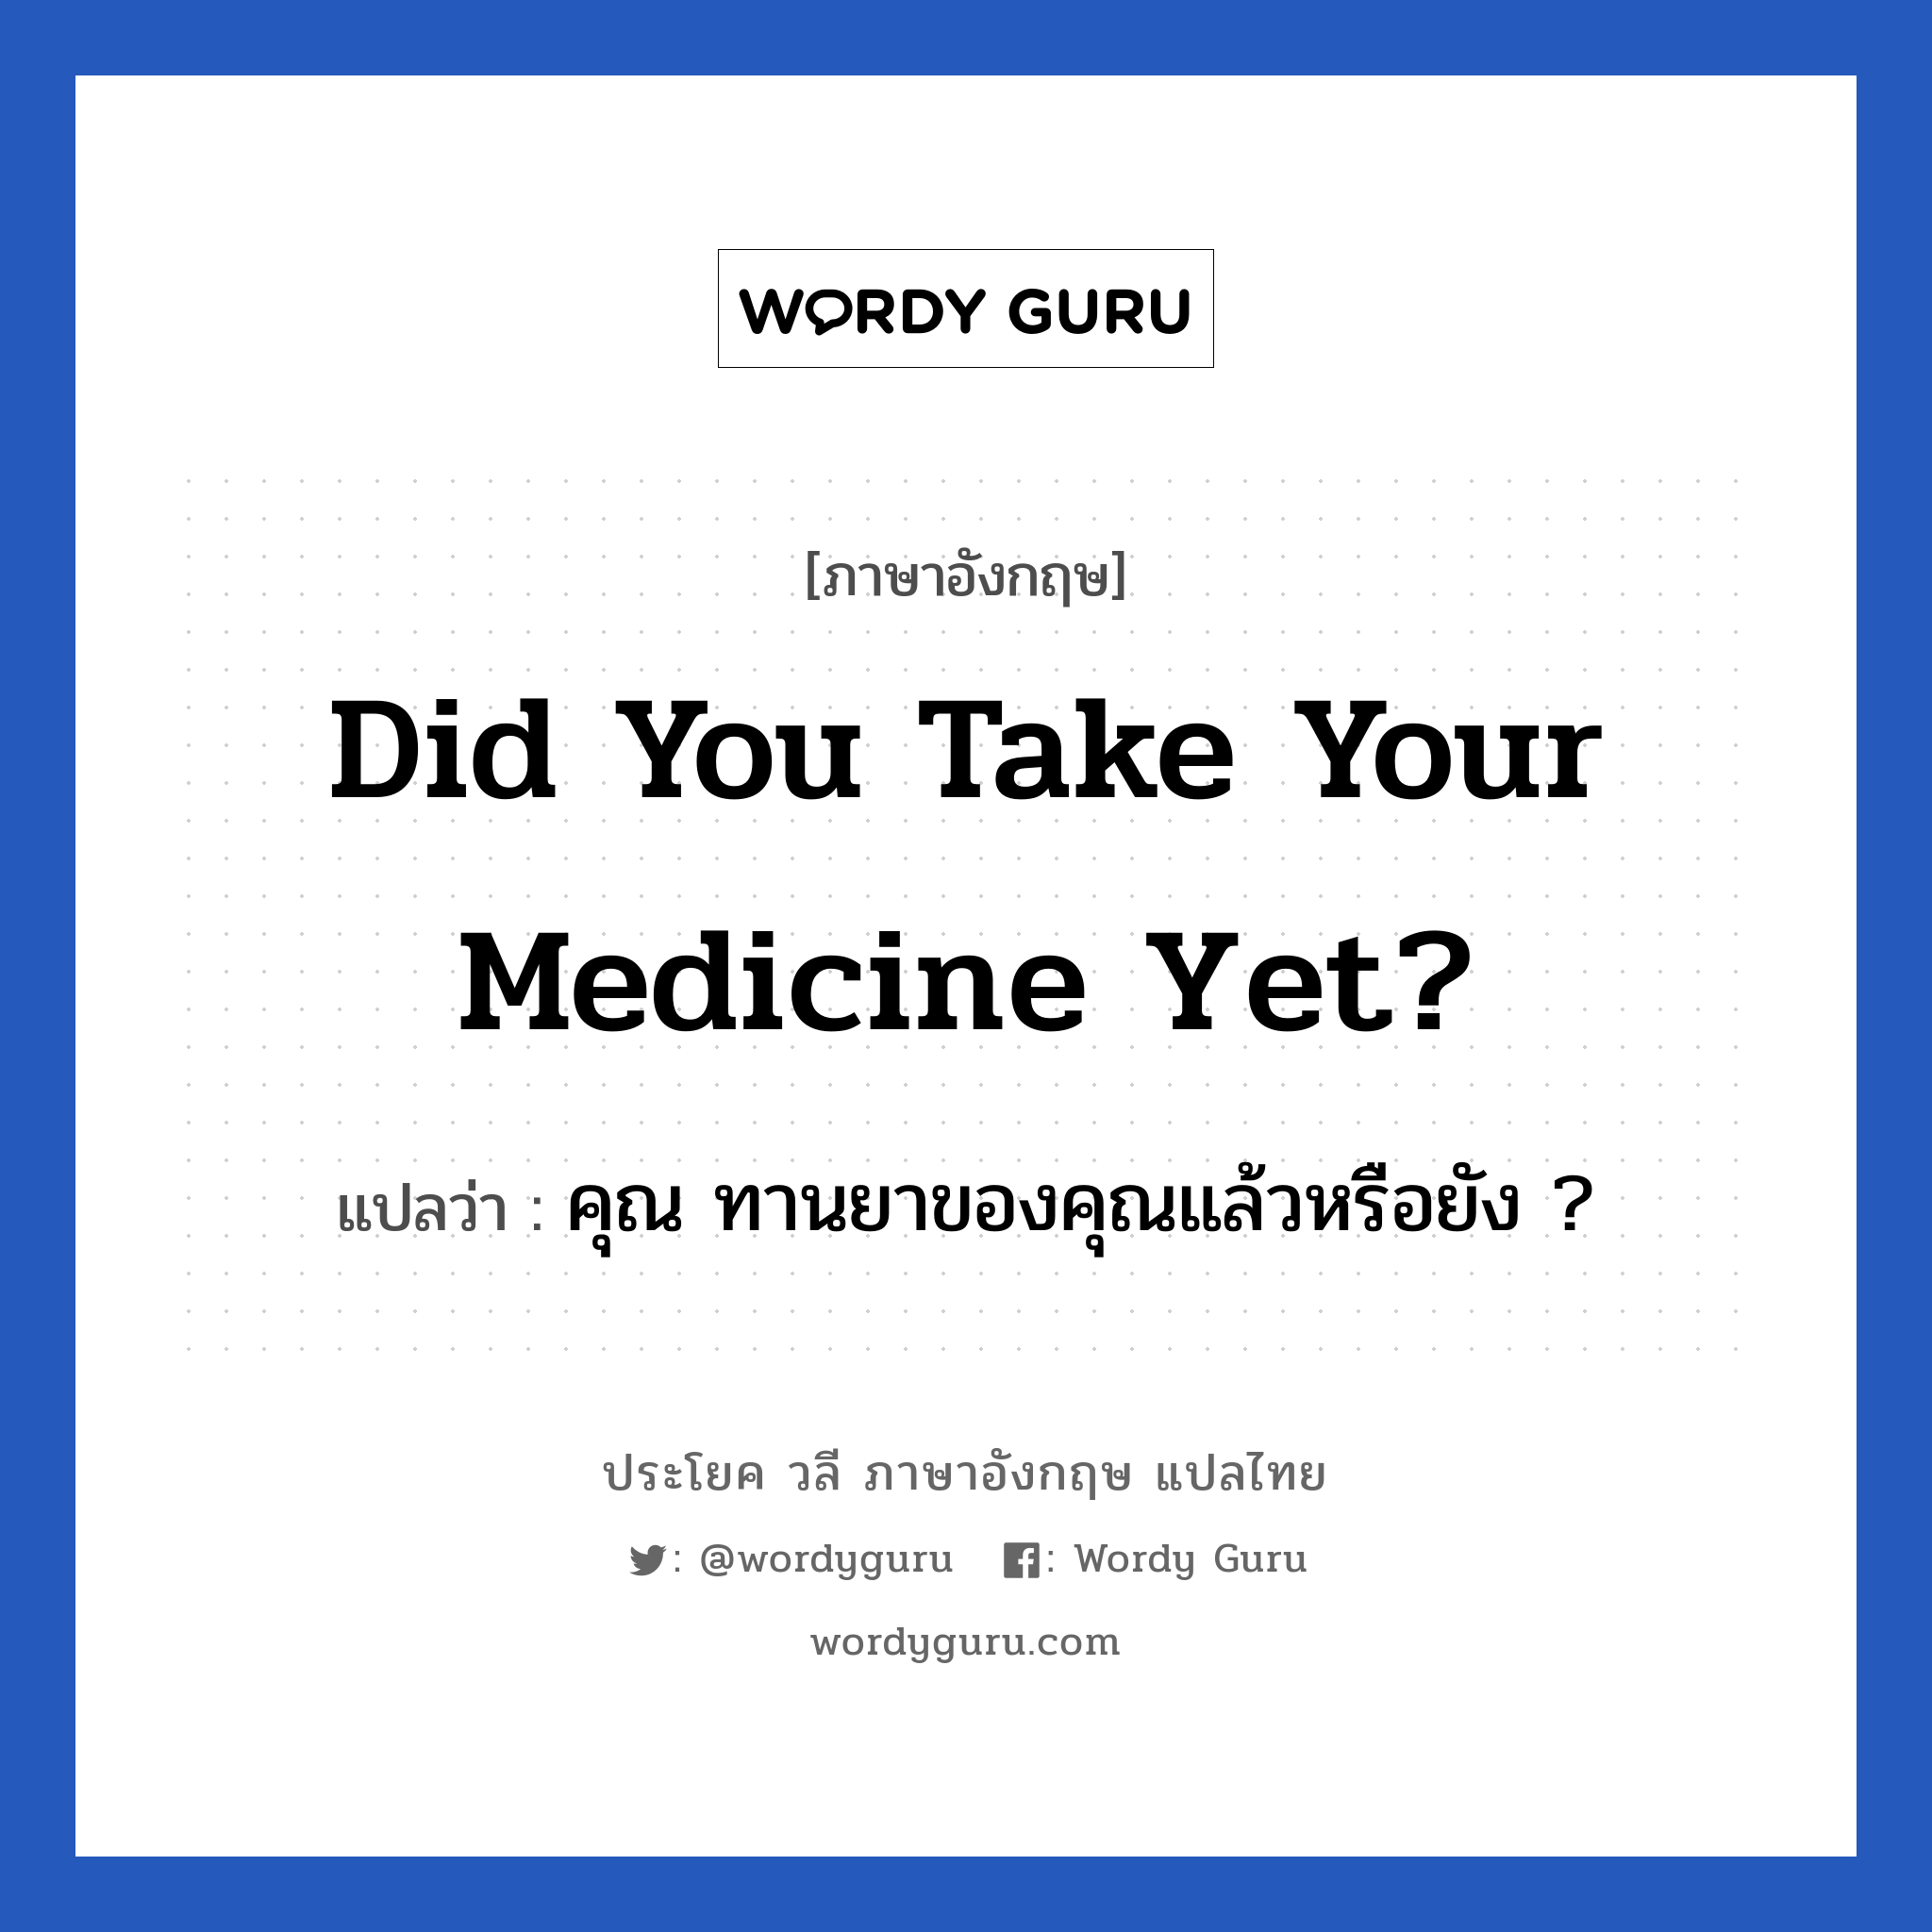 คุณ ทานยาของคุณแล้วหรือยัง ? ภาษาอังกฤษ?, วลีภาษาอังกฤษ คุณ ทานยาของคุณแล้วหรือยัง ? แปลว่า Did you take your medicine yet?